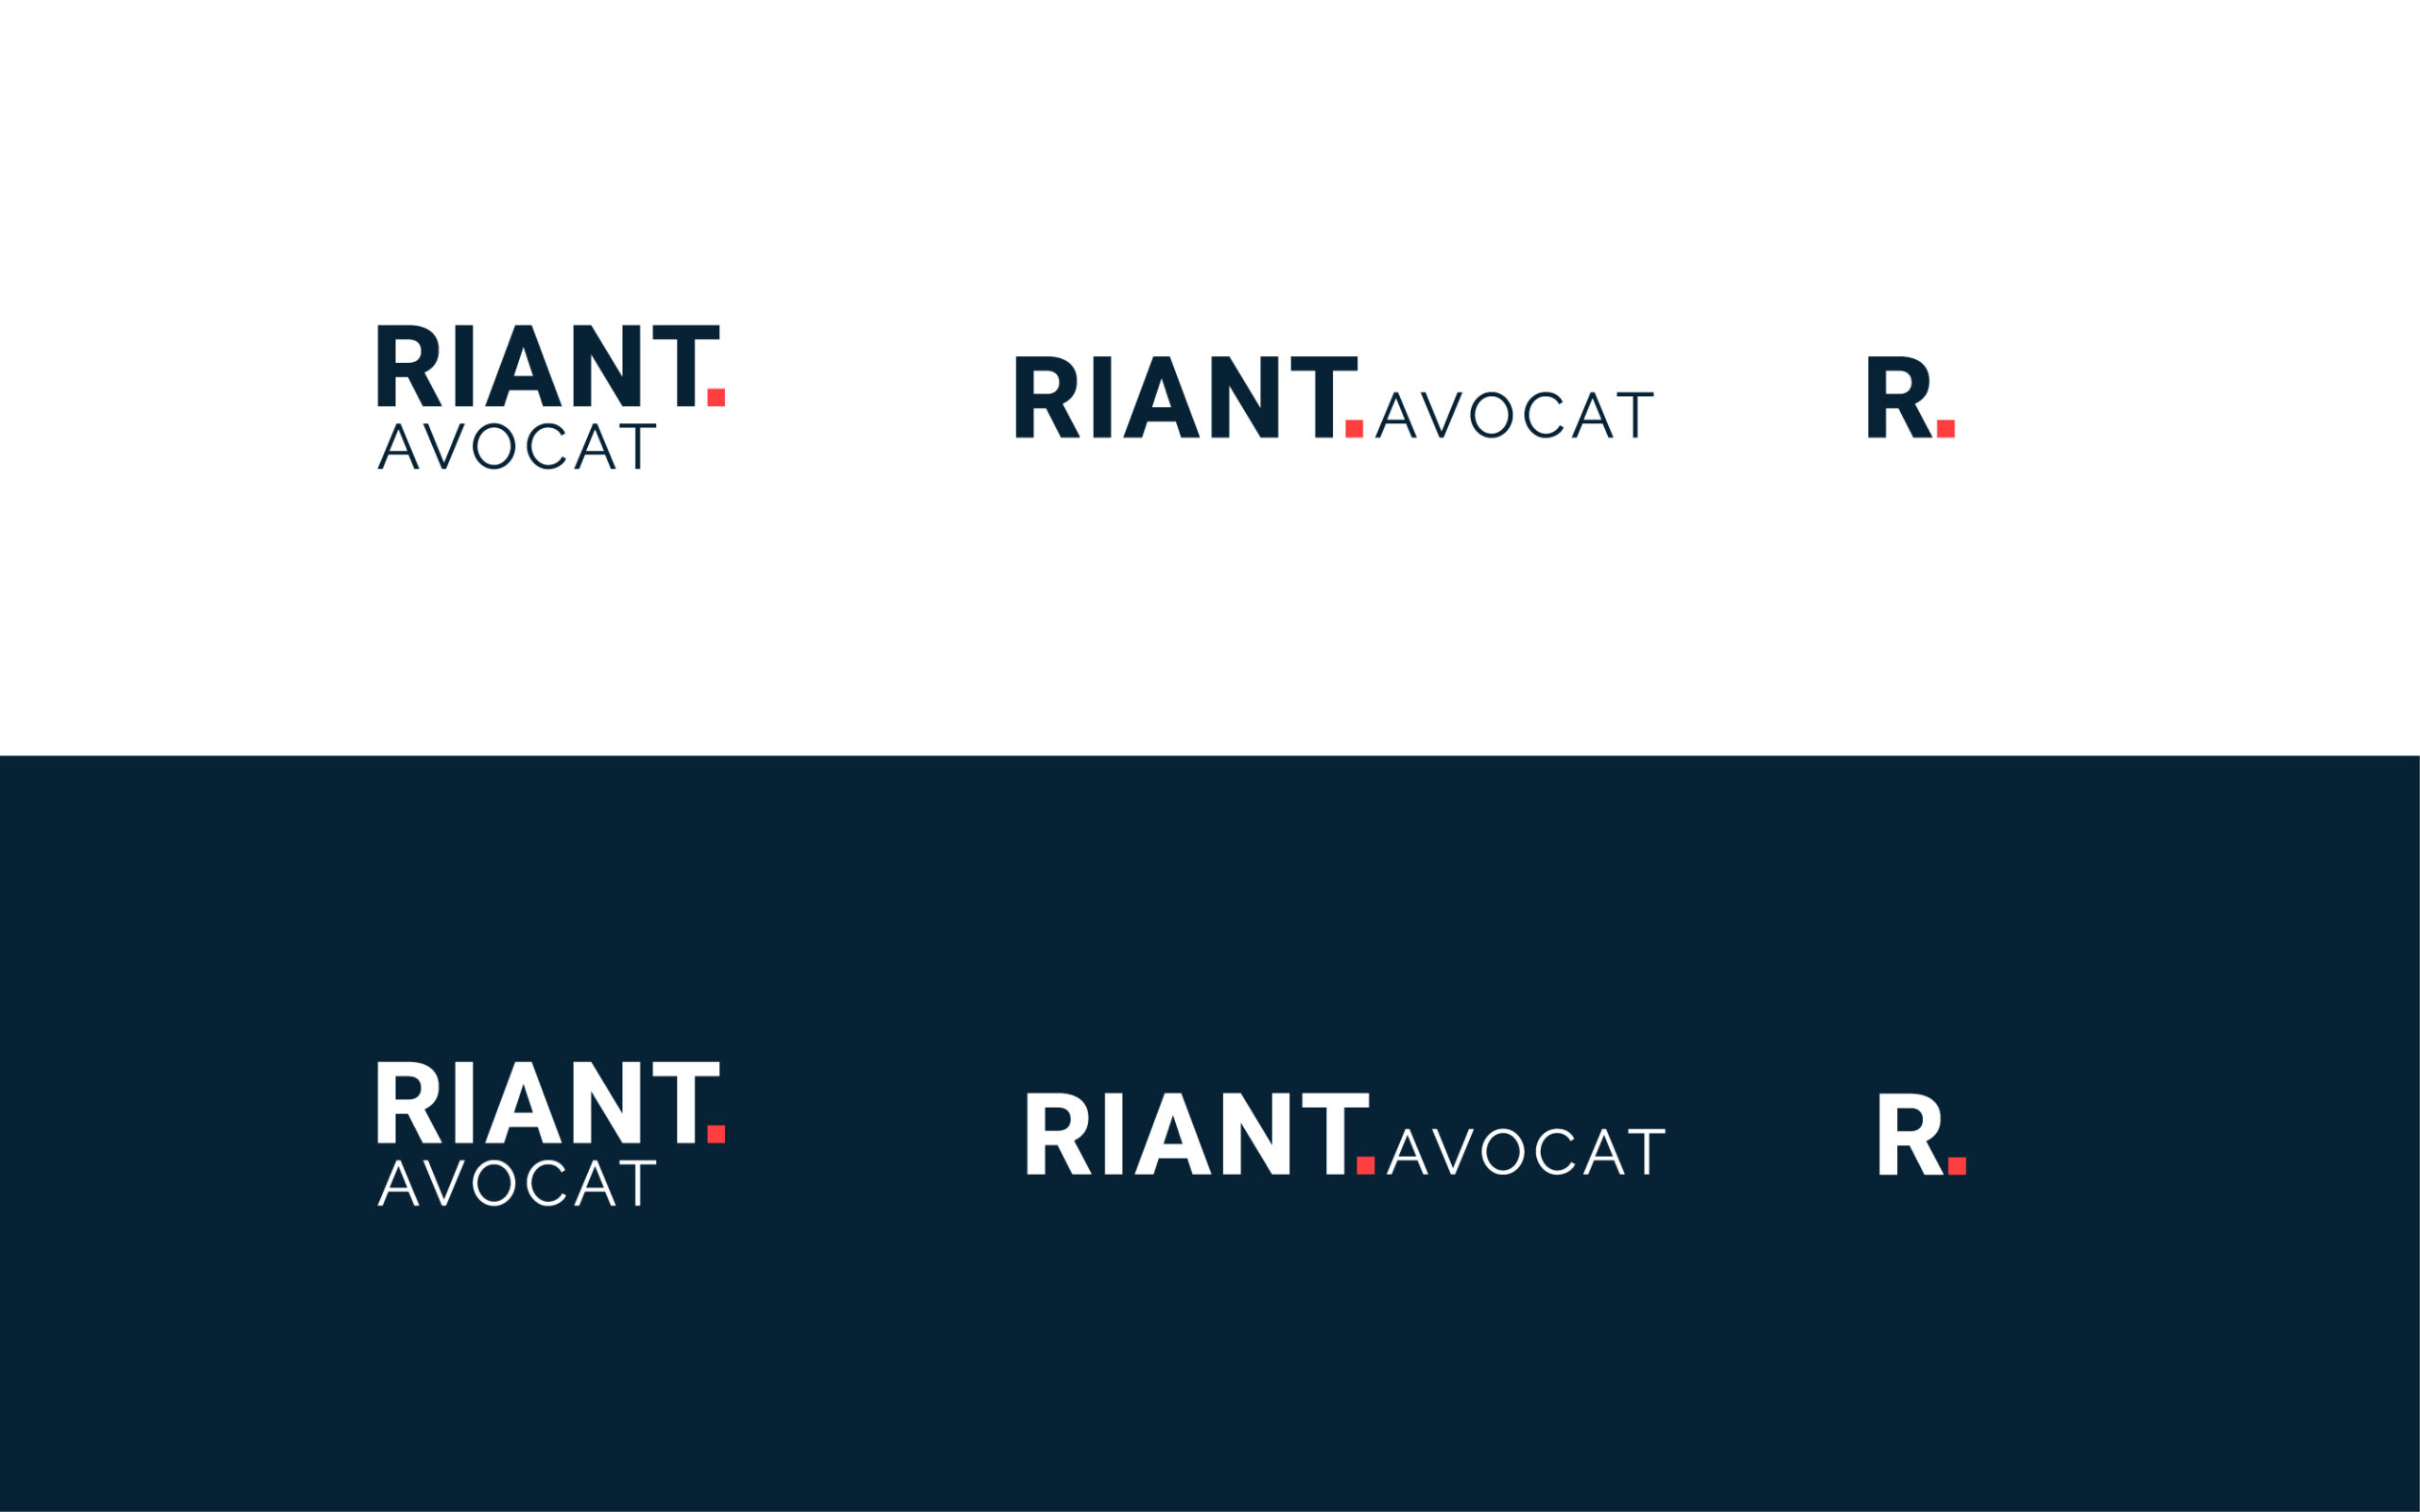 Riant avocat logo variations